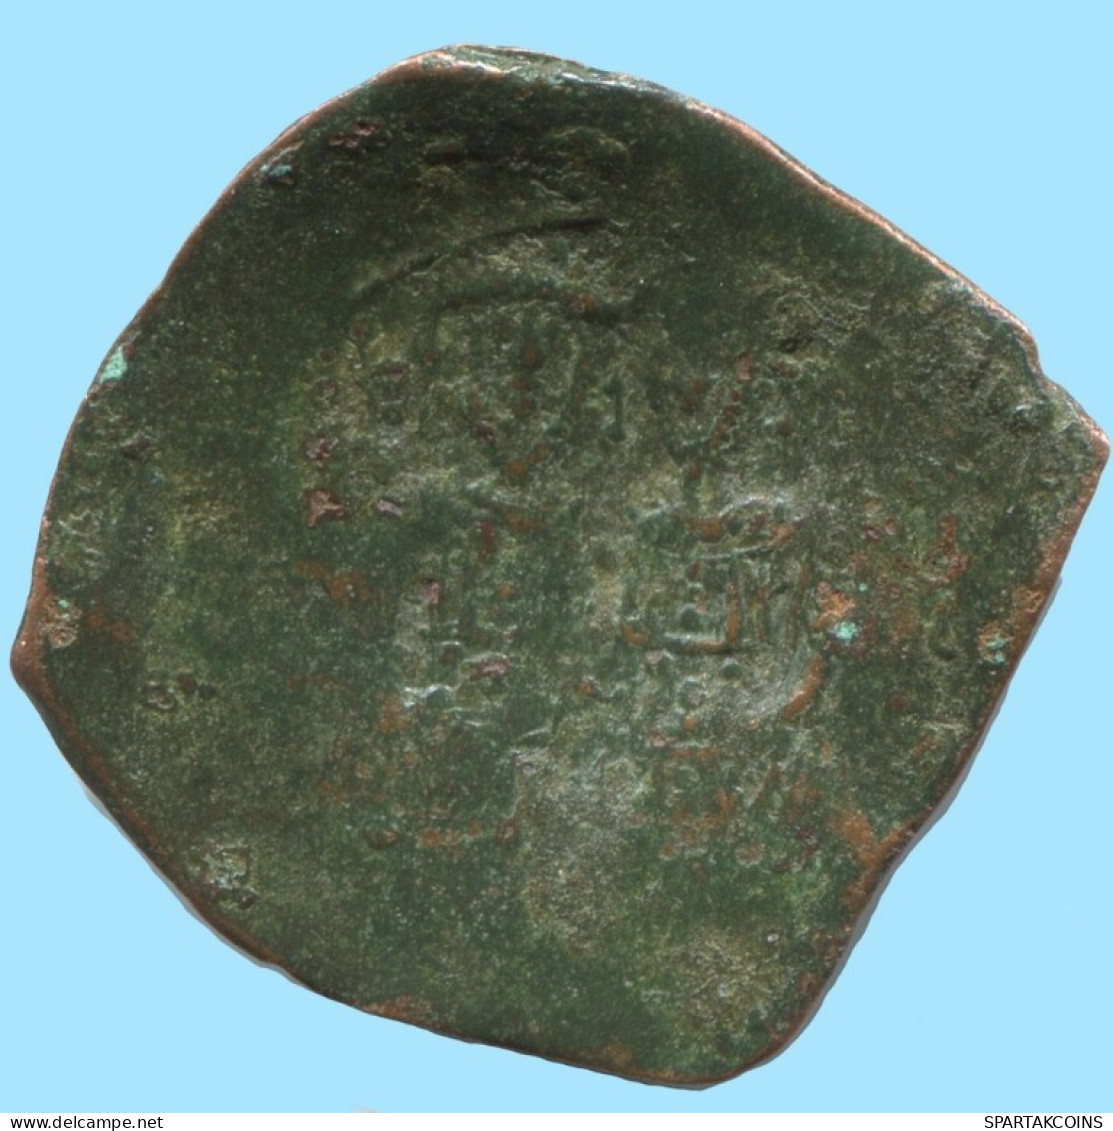 ALEXIOS III ANGELOS ASPRON TRACHY BILLON BYZANTINE Coin 2g/25mm #AB453.9.U.A - Byzantine